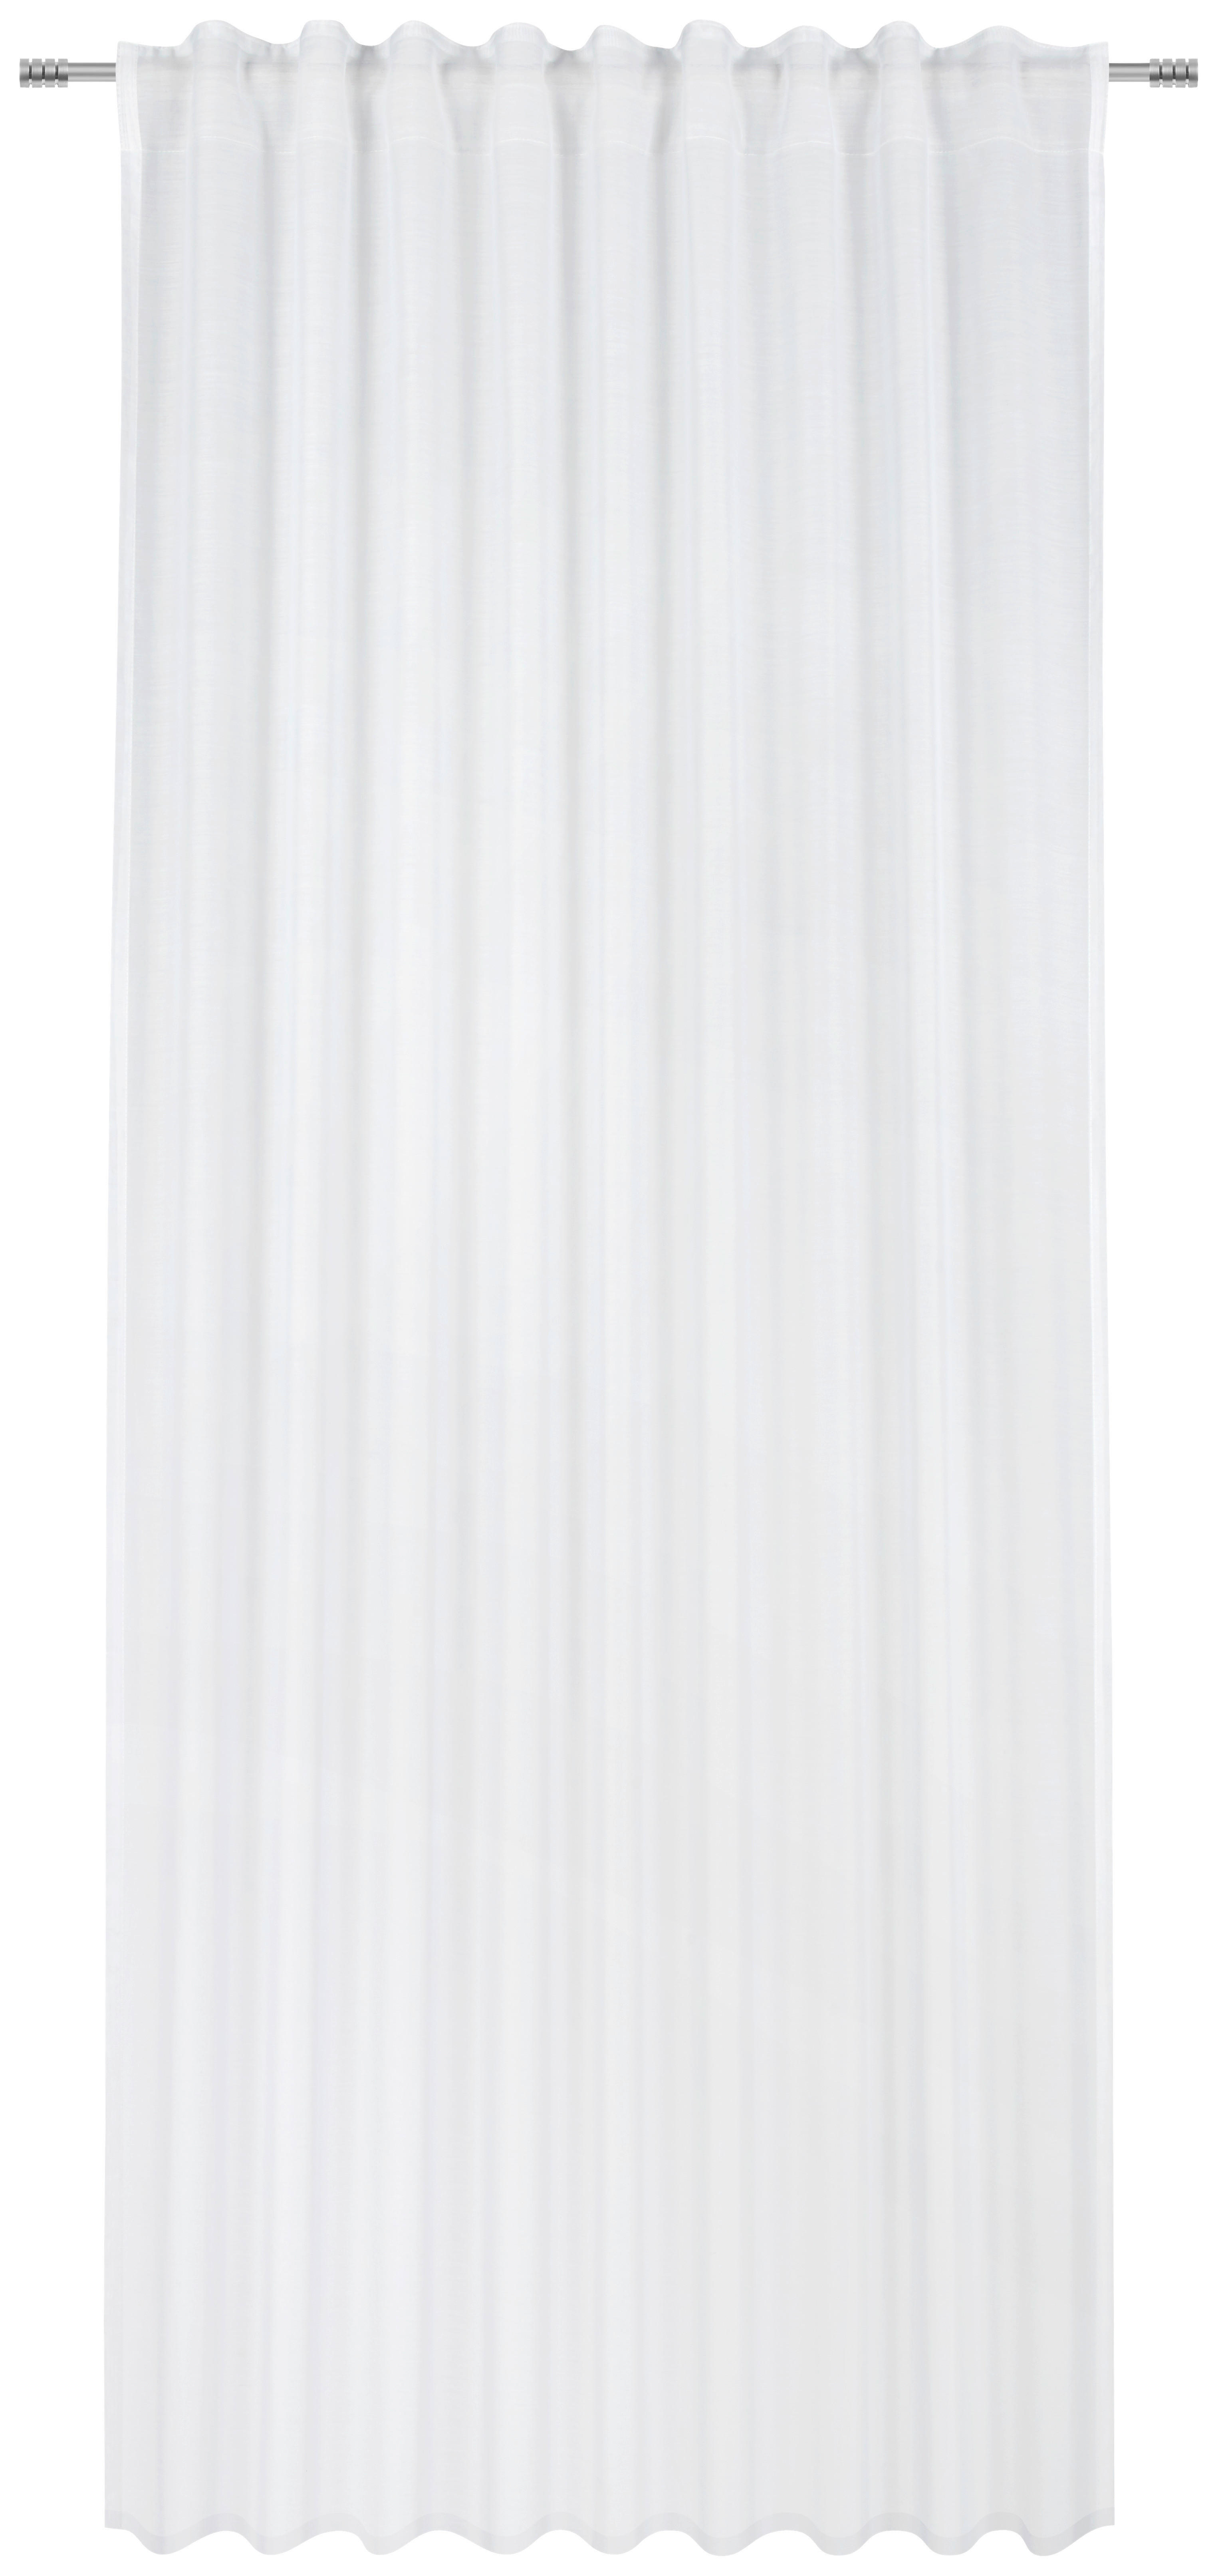 GOTOVA ZAVESA bela - bela, Konvencionalno, tekstil (140/245cm) - Esposa